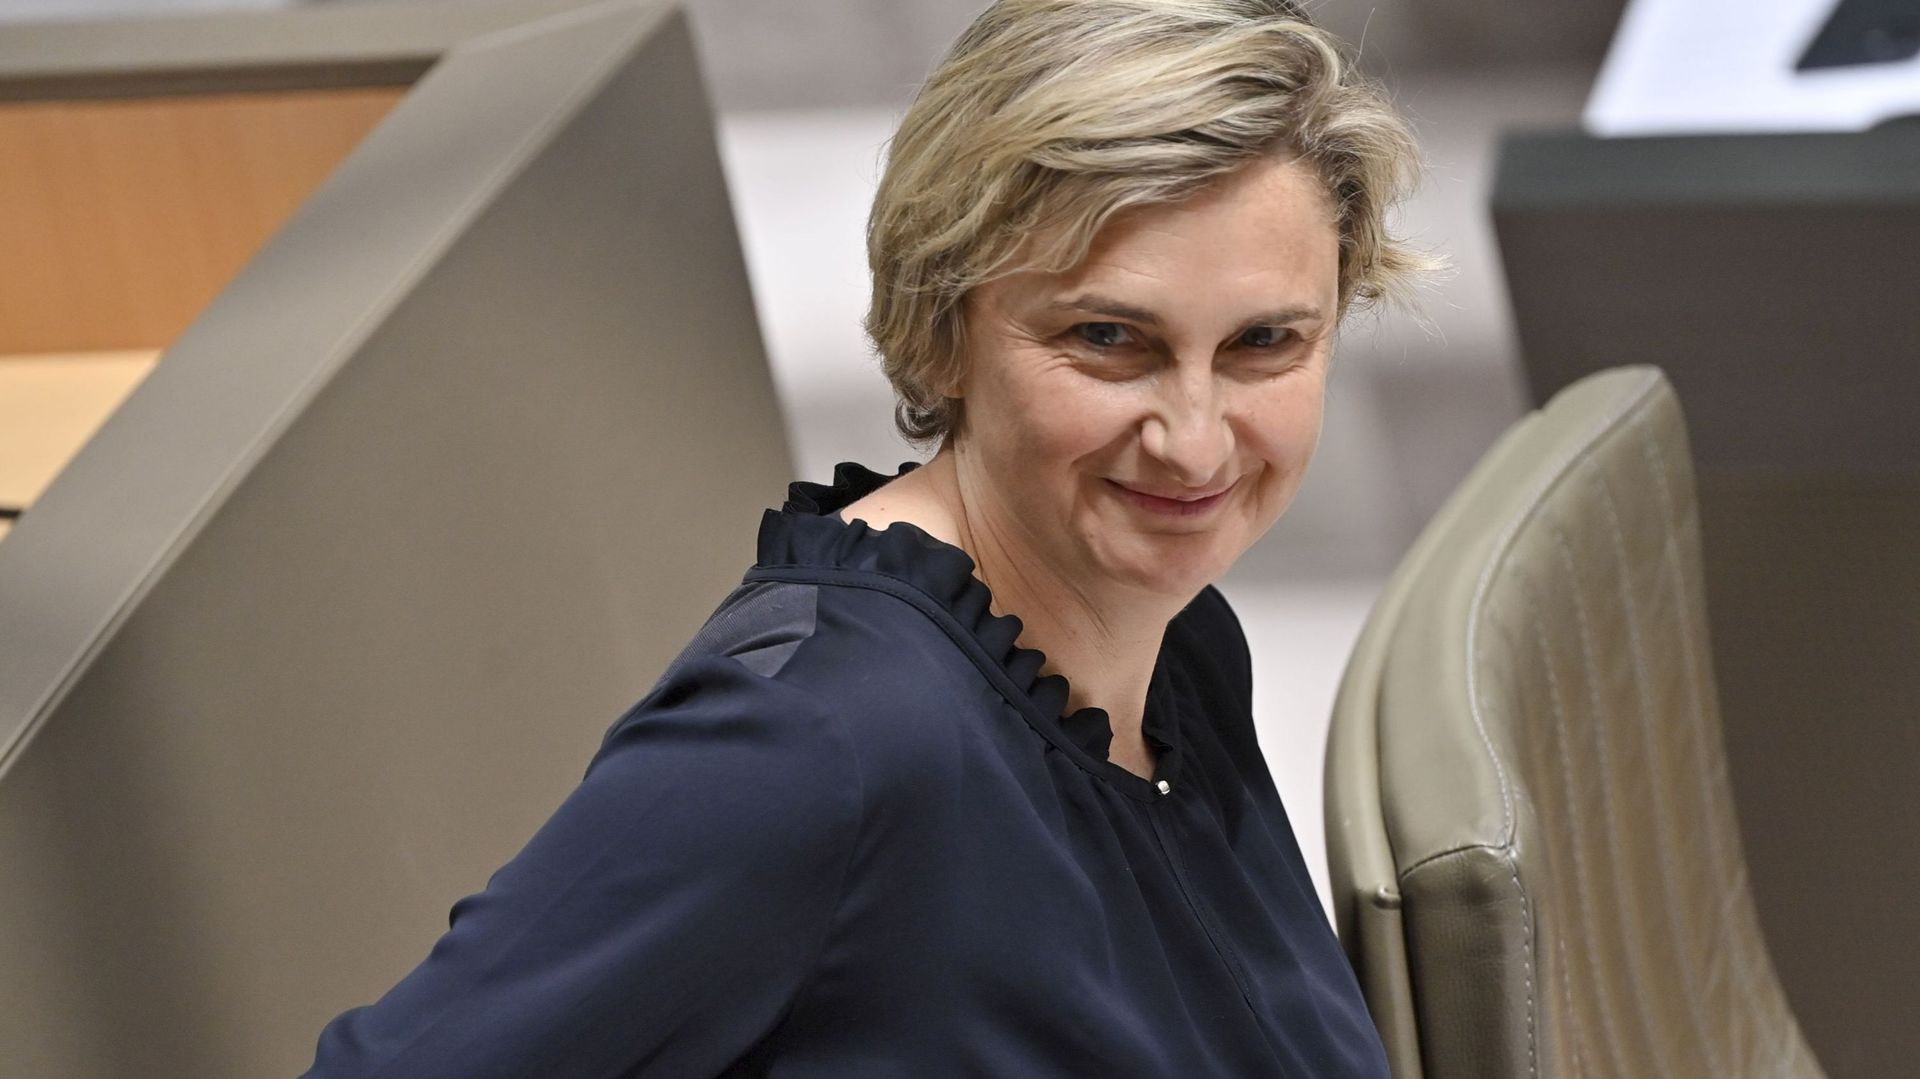 La ministre flamande Hilde Crevits de retour après une incapacité de six semaines – Illustration
